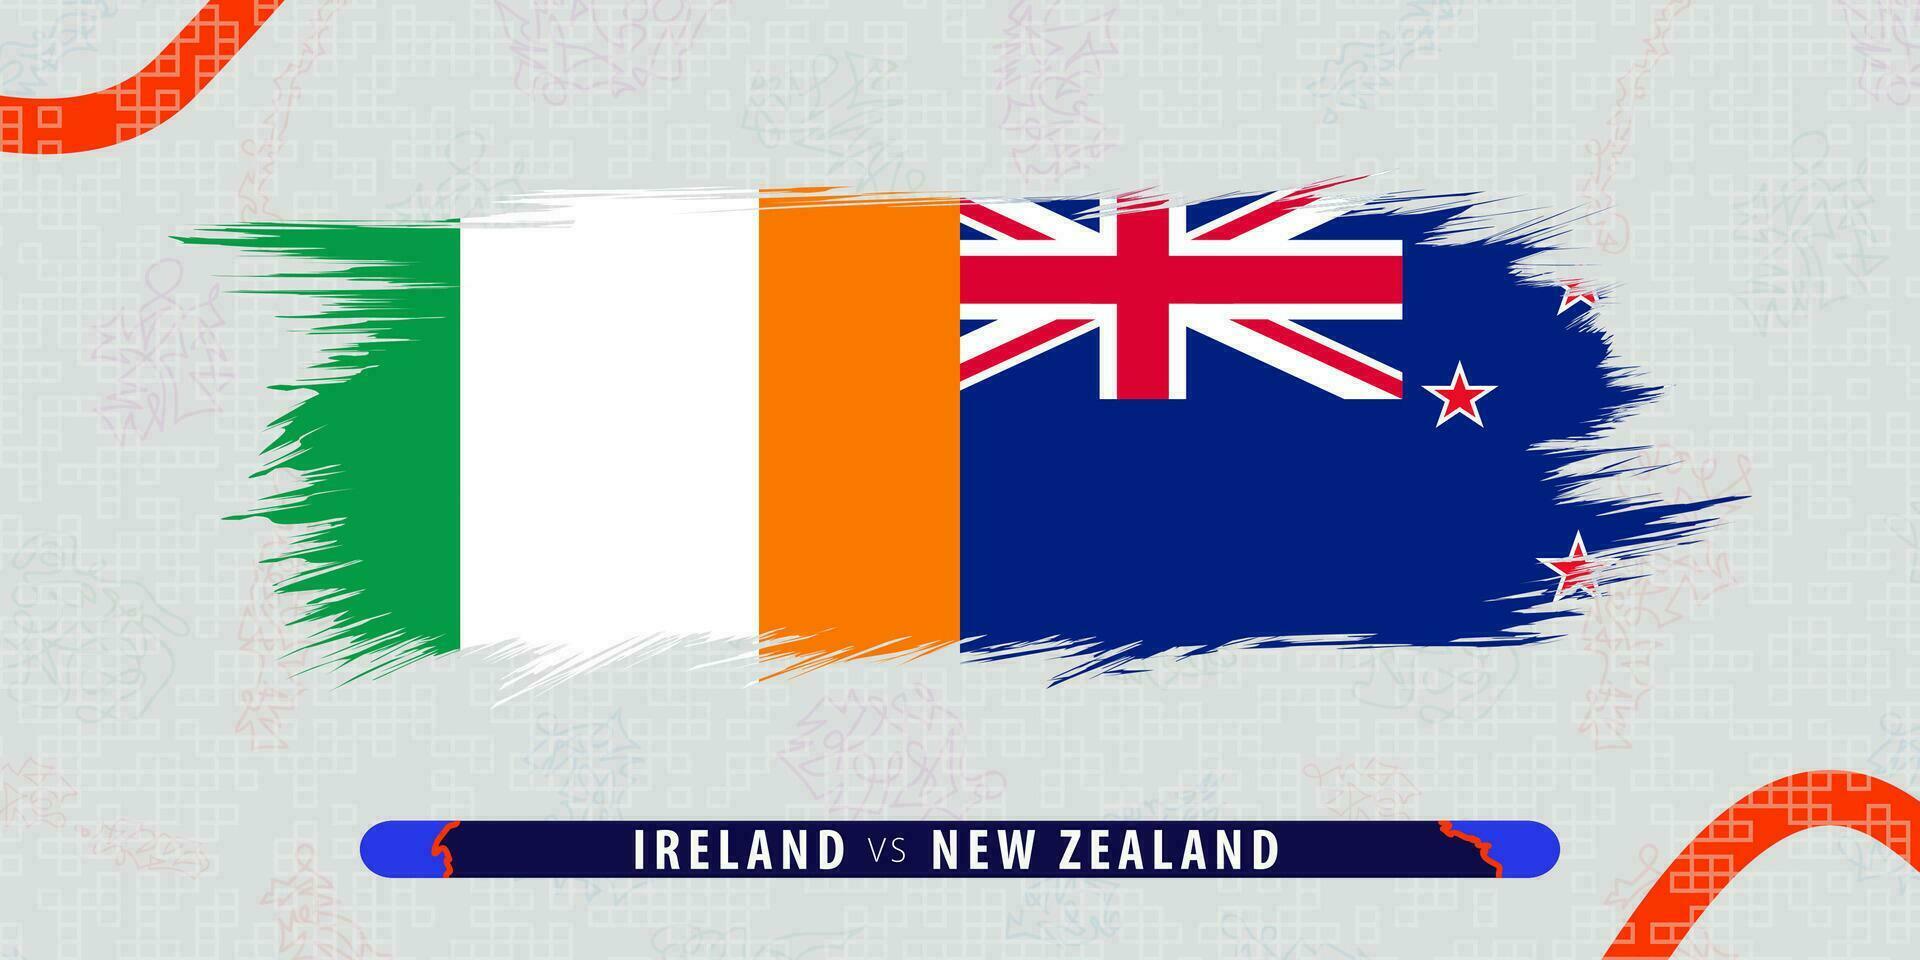 Irland vs. Neu Neuseeland, International Rugby Quartal Finale Spiel Illustration im Pinselstrich Stil. abstrakt grungy Symbol zum Rugby passen. vektor